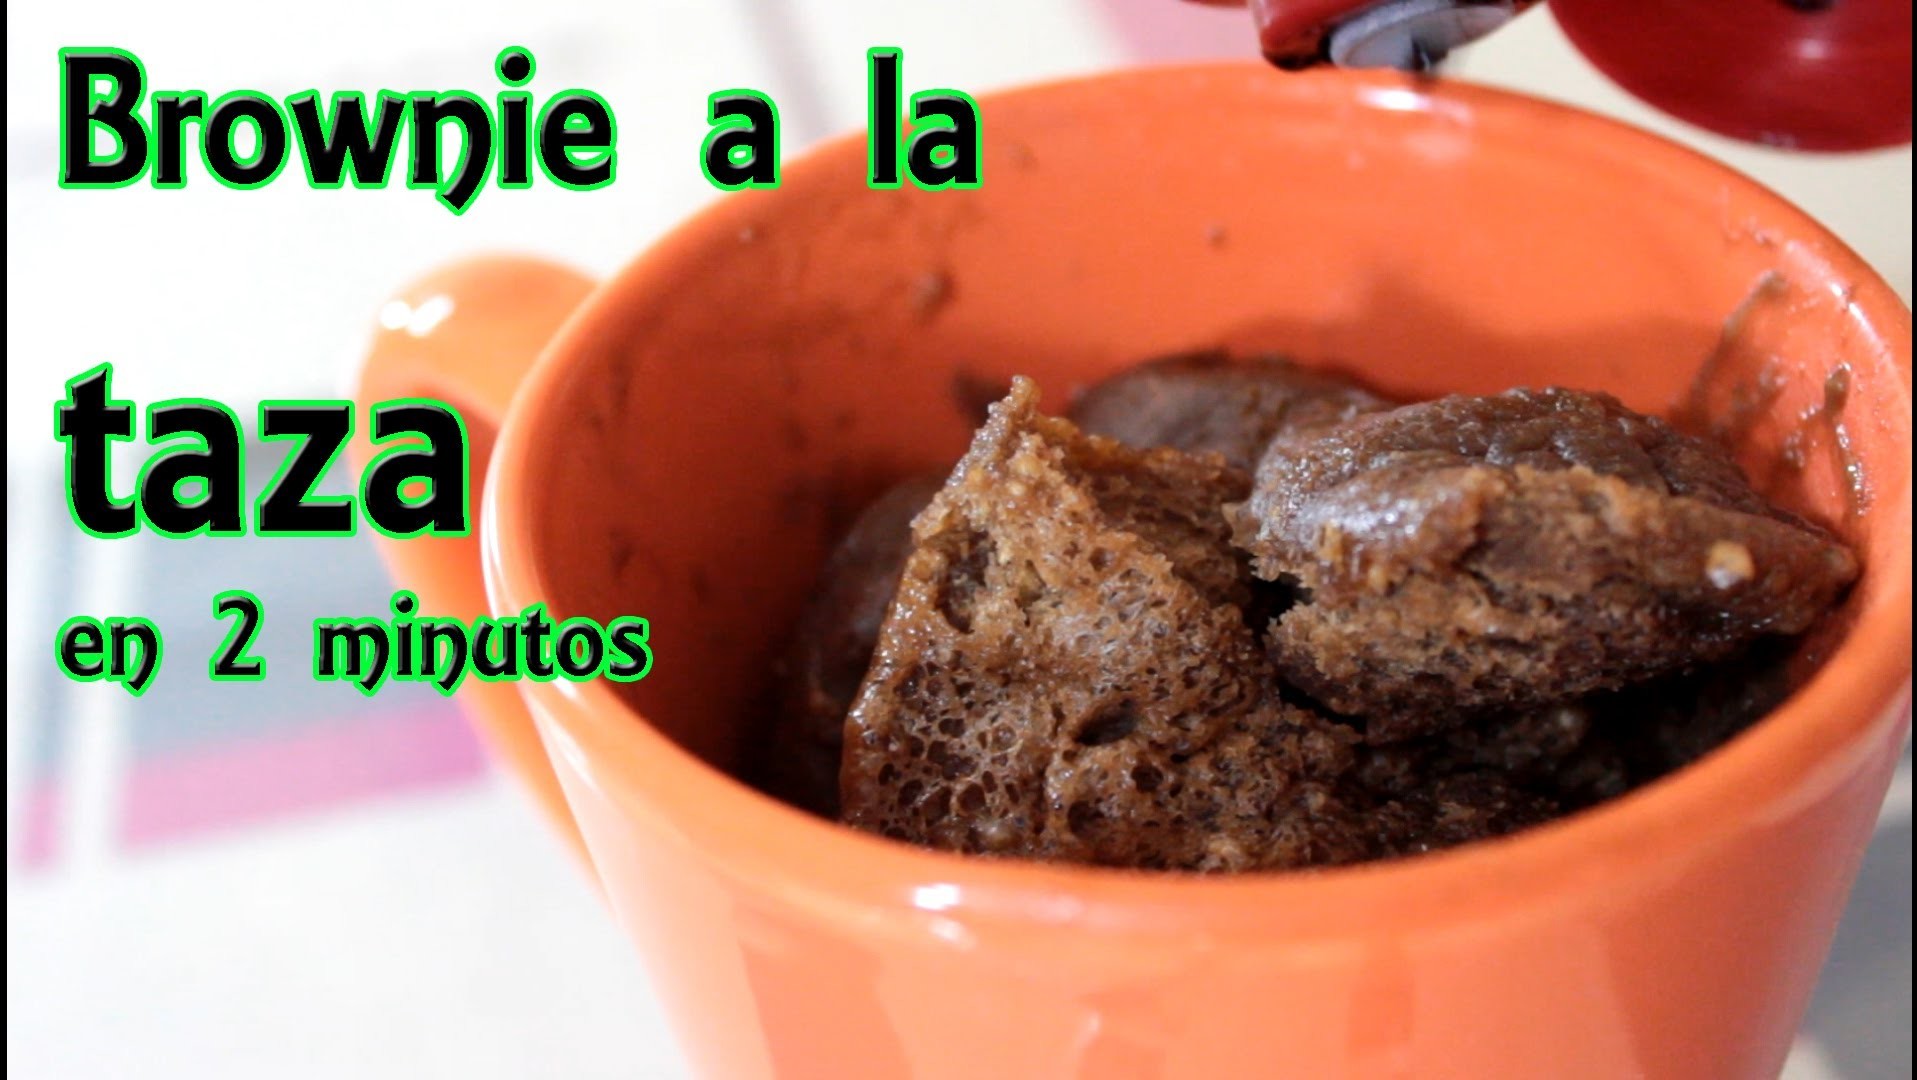 Brownie a la taza en 2 minutos, recetas sin horno - Manualidades Fáciles